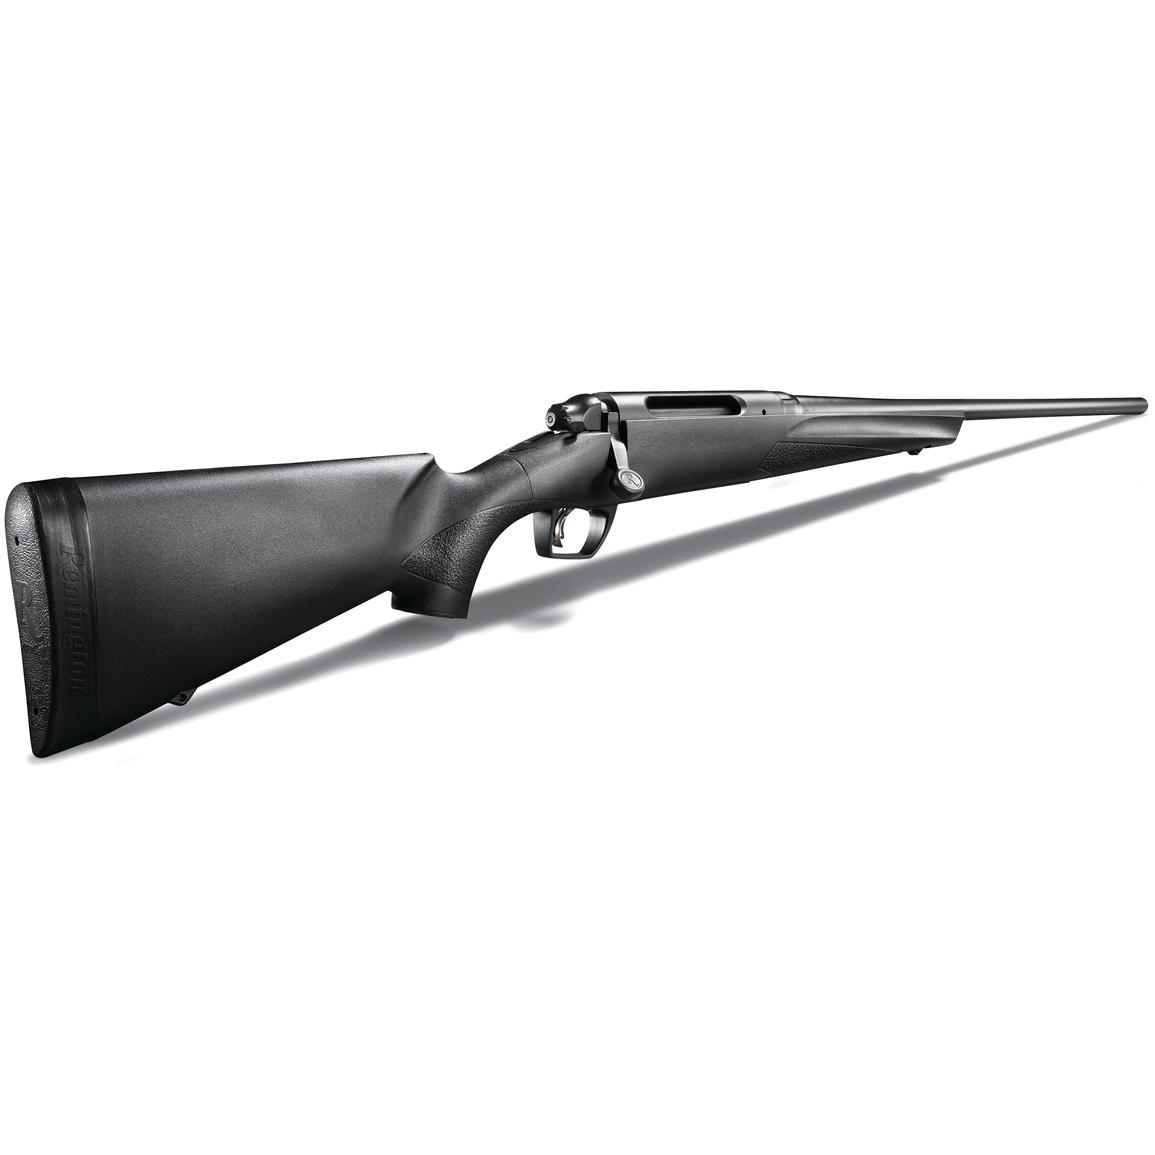 Remington Model 783, Bolt Action, 7mm Remington Magnum, 24" Barrel, 3+1 Rounds